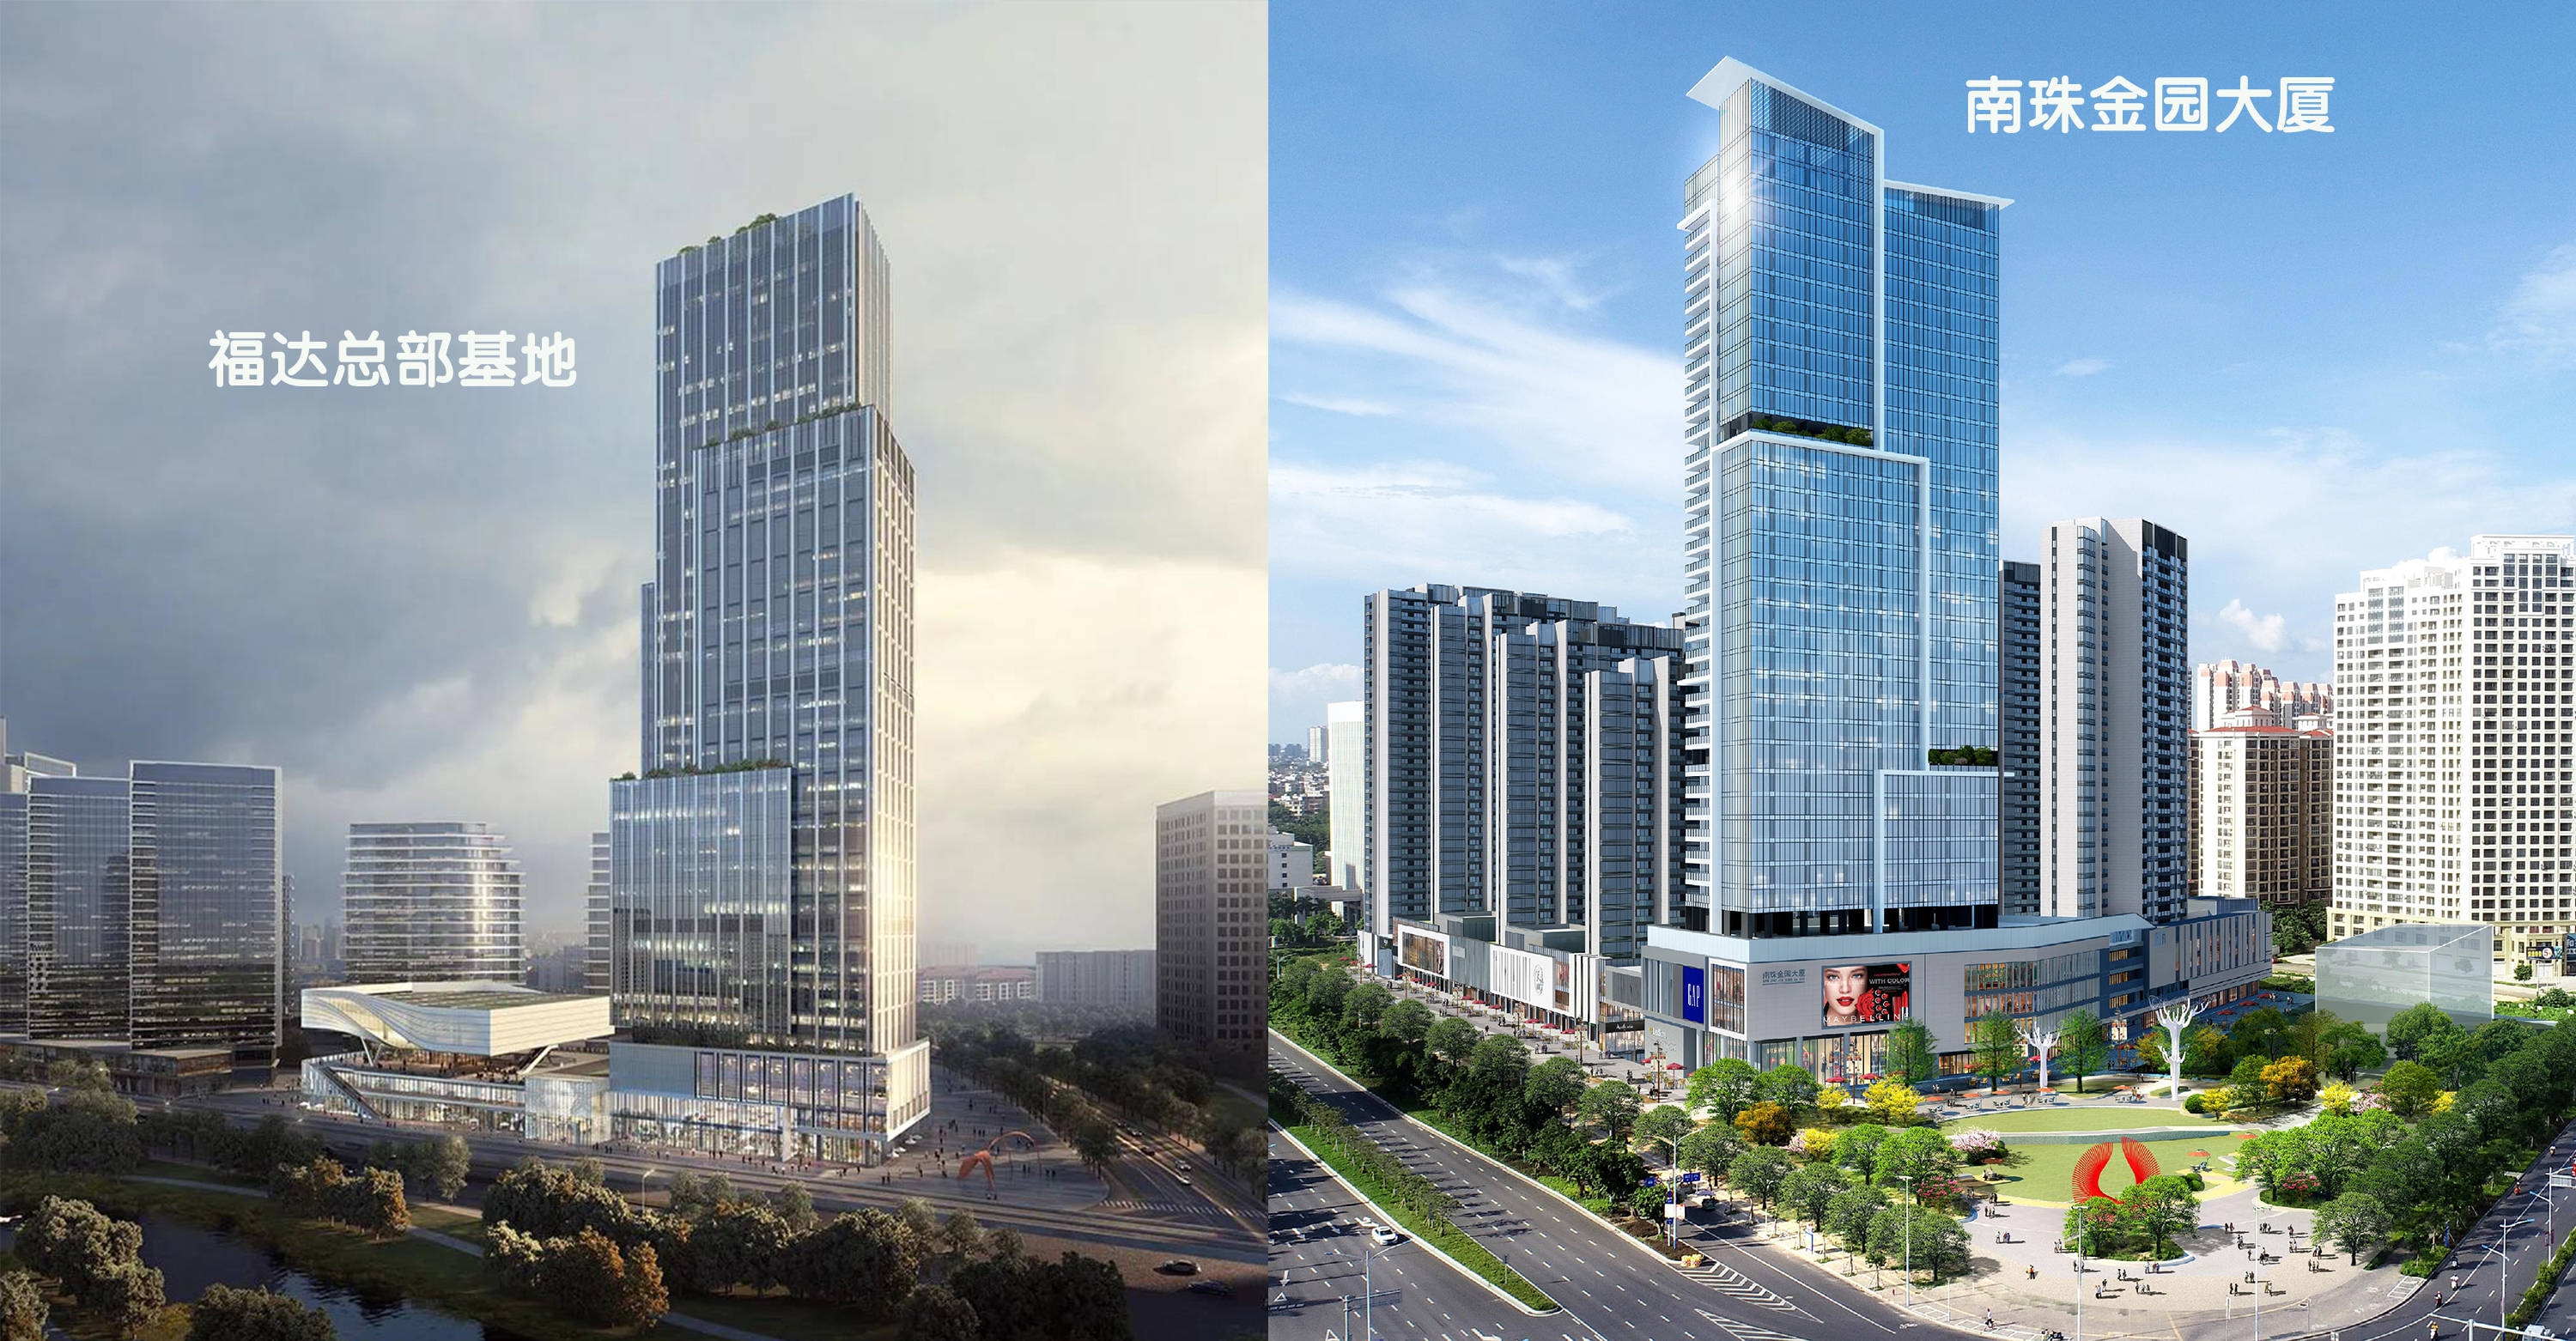 原创桂林市第一高楼设计跟北海市这栋超高层好像有点像